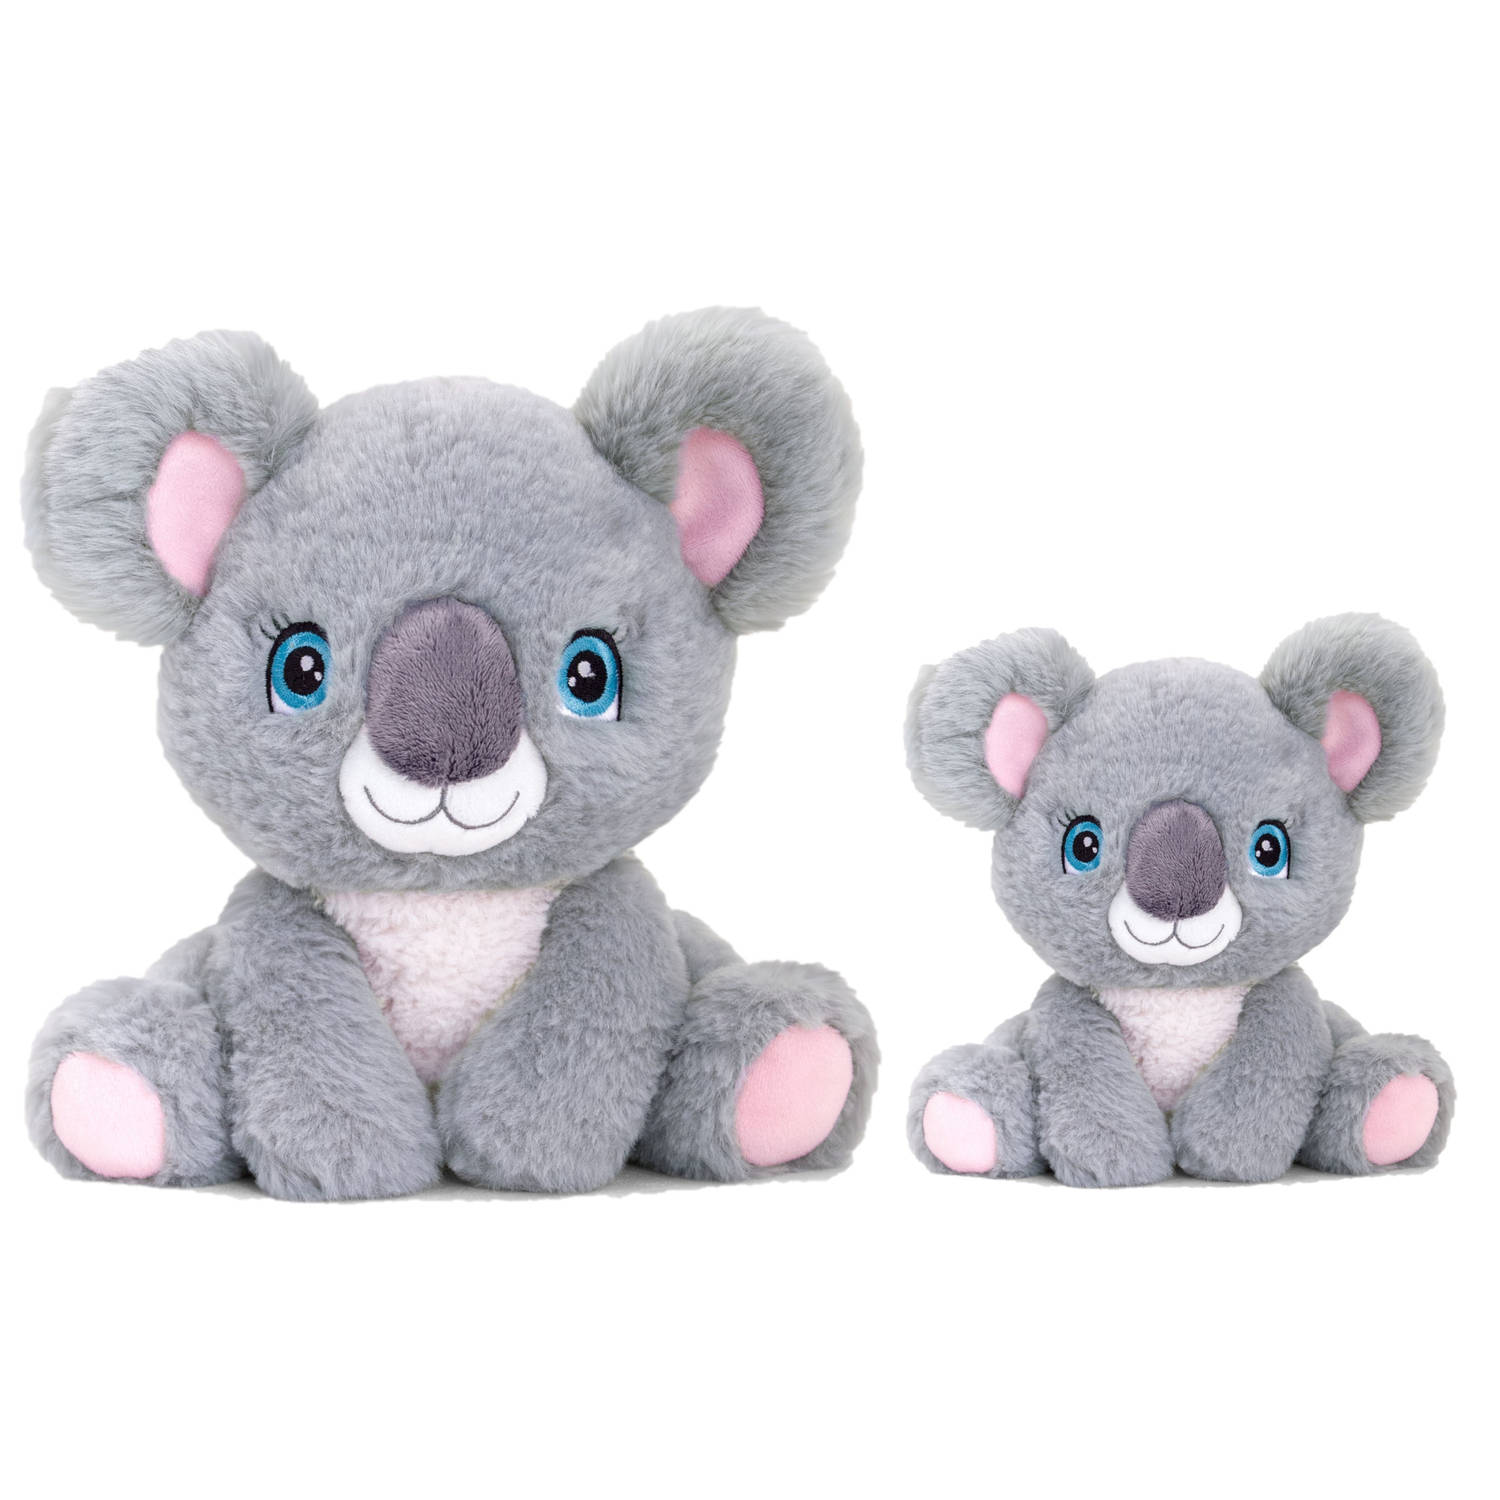 Keel Toys Pluche knuffel dieren set 2x koala beertjes 14 en 25 cm Knuffeldier